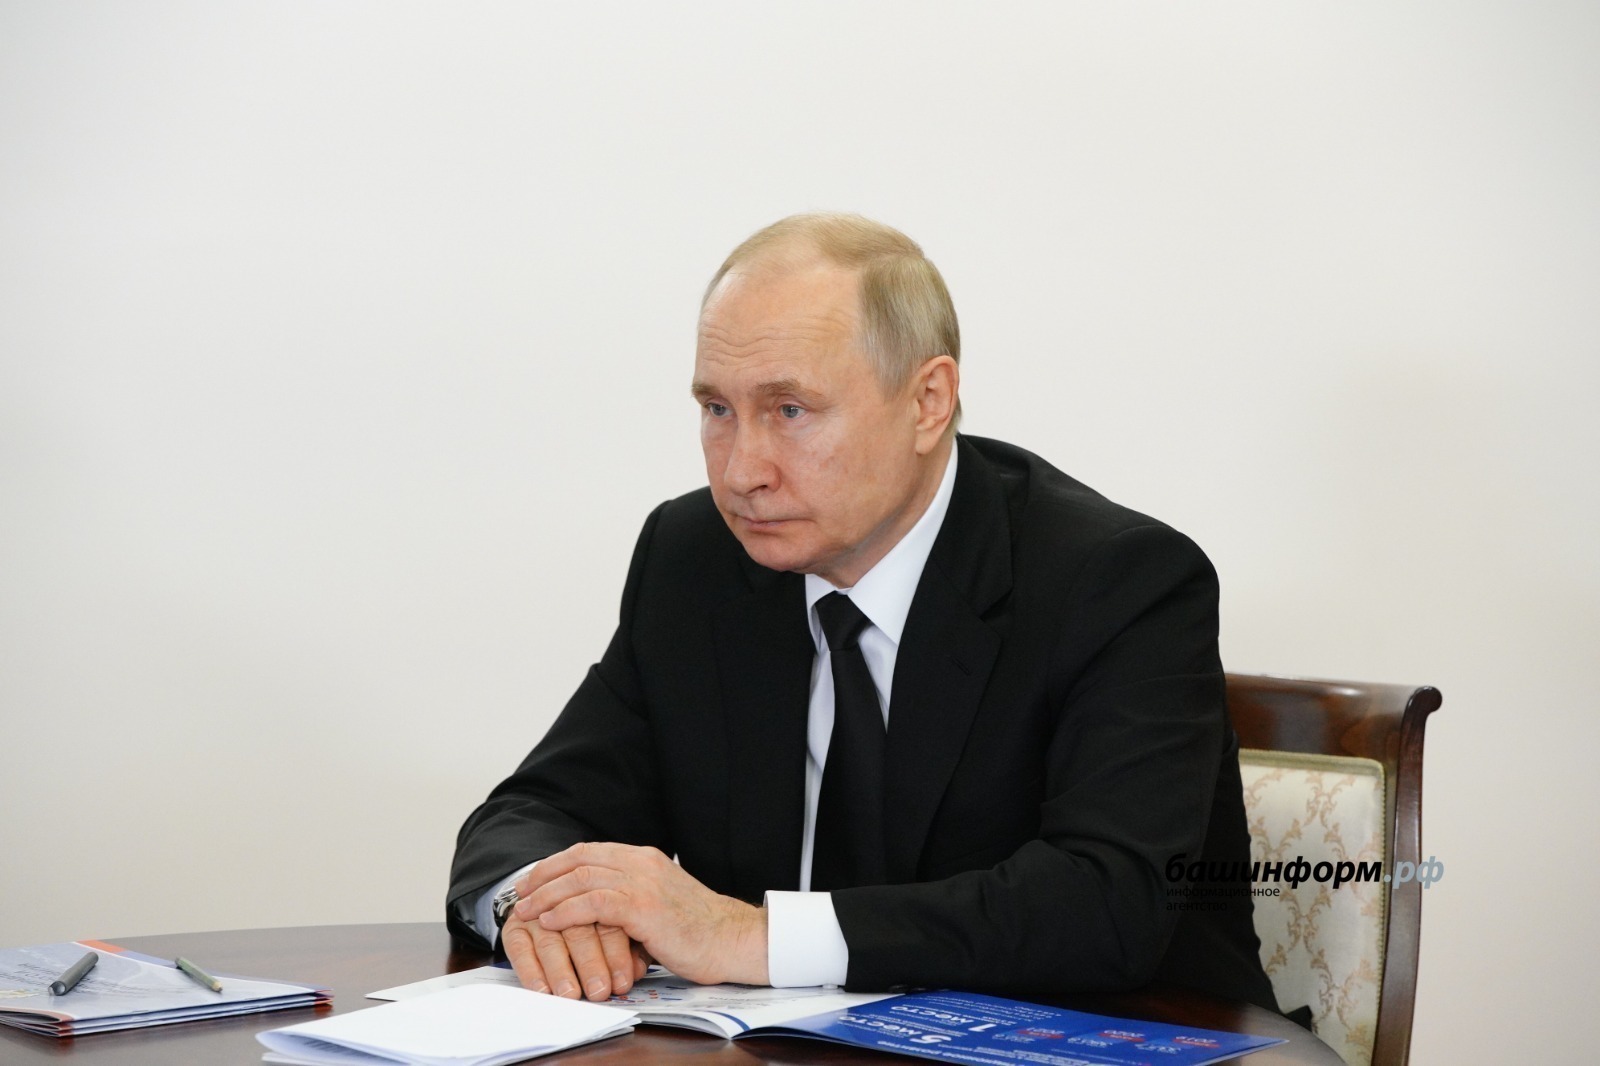 14 декабрҙә - Путин менән тура бәйләнеш